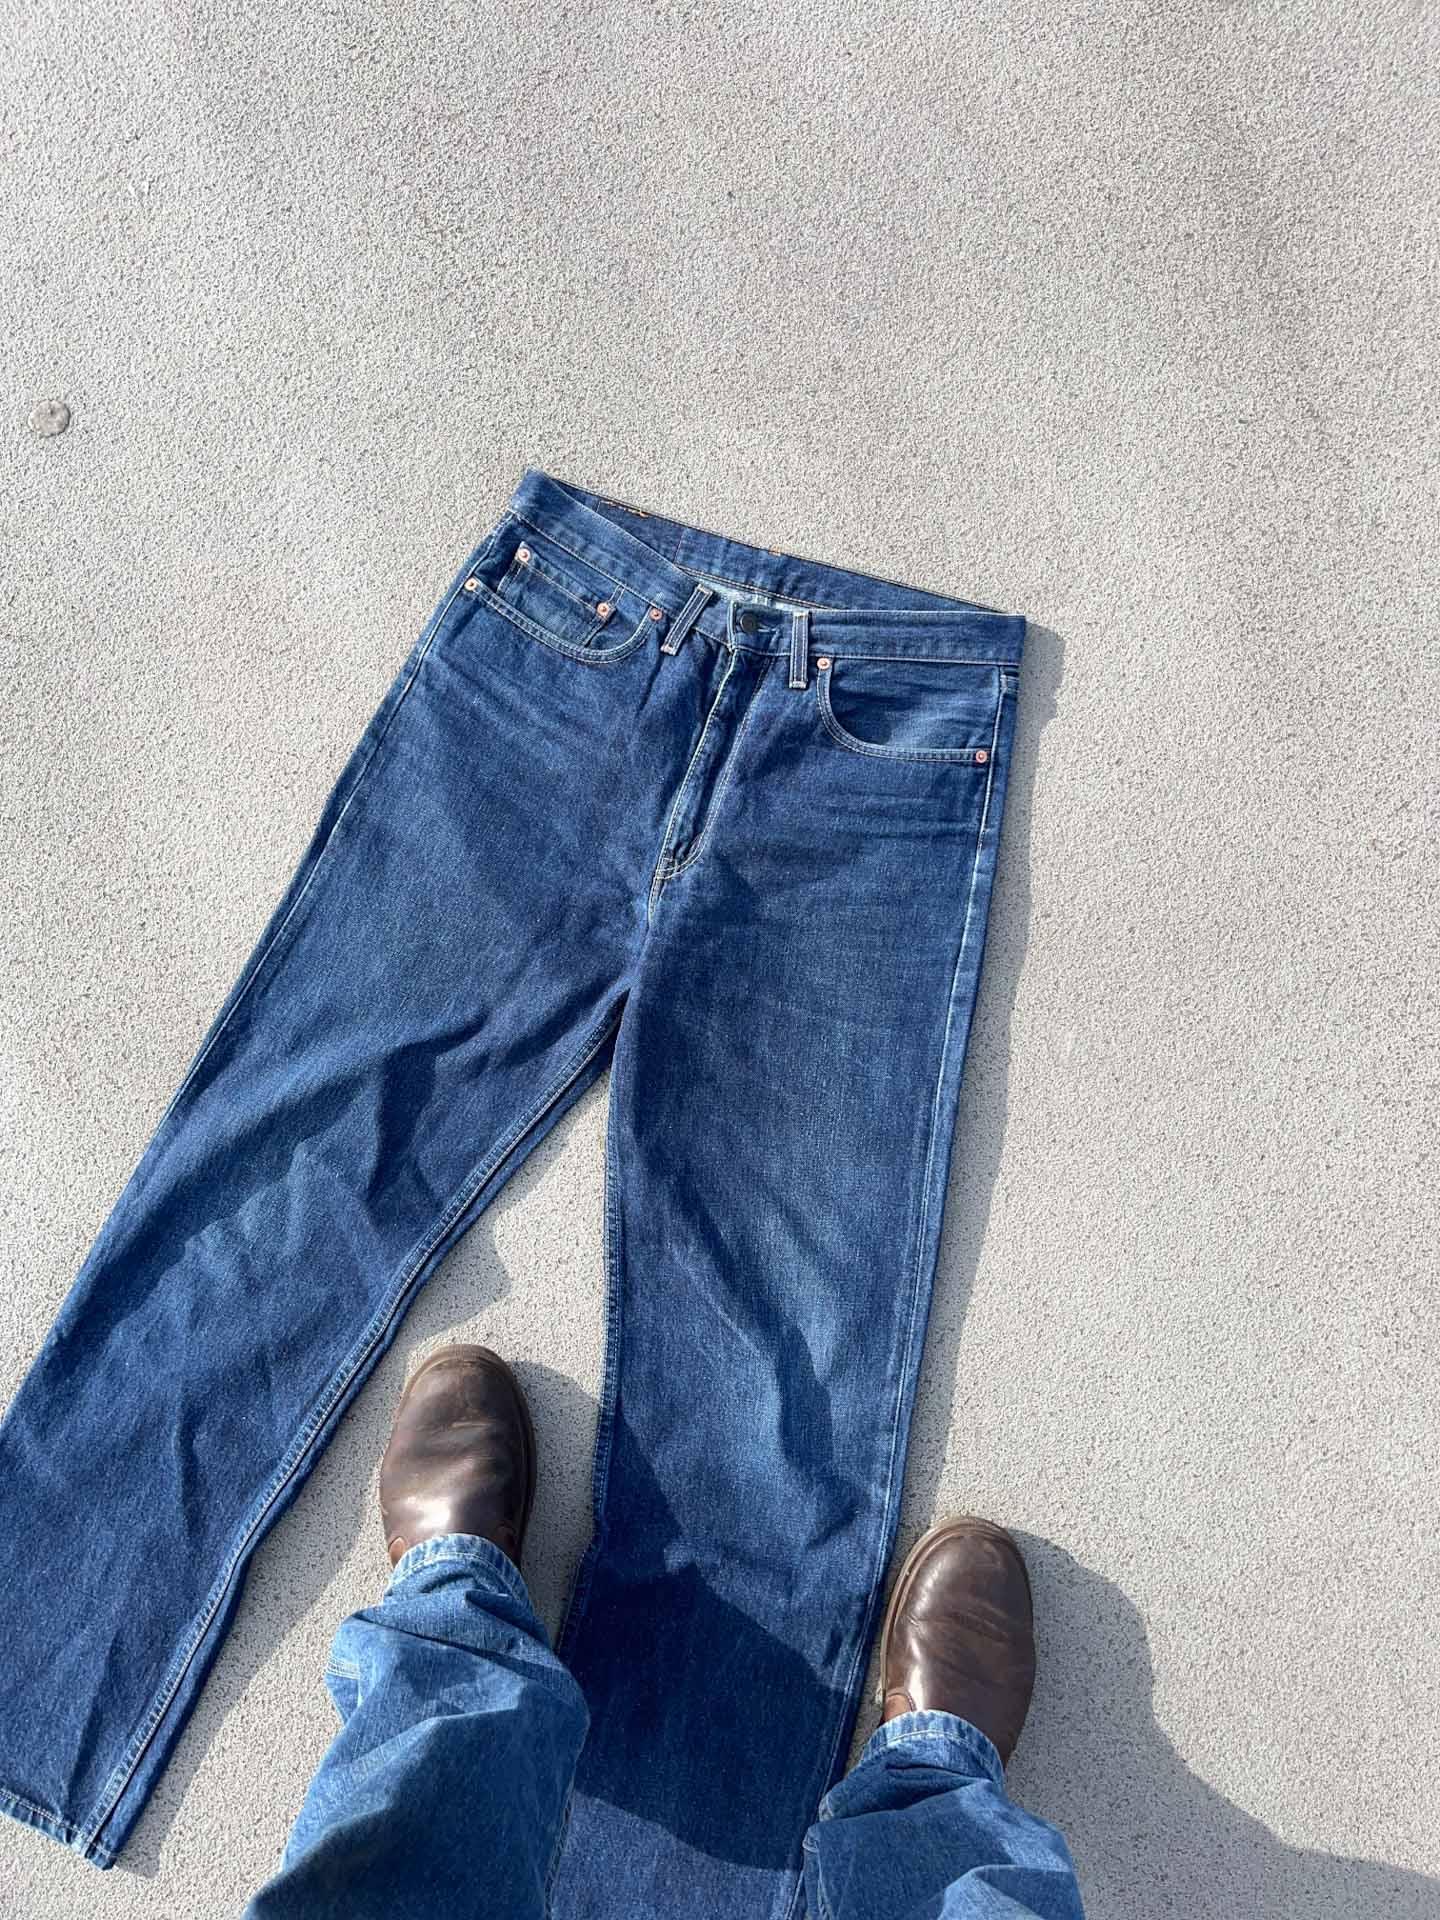 Levi’s 520 04 denim jeans - secondvintage